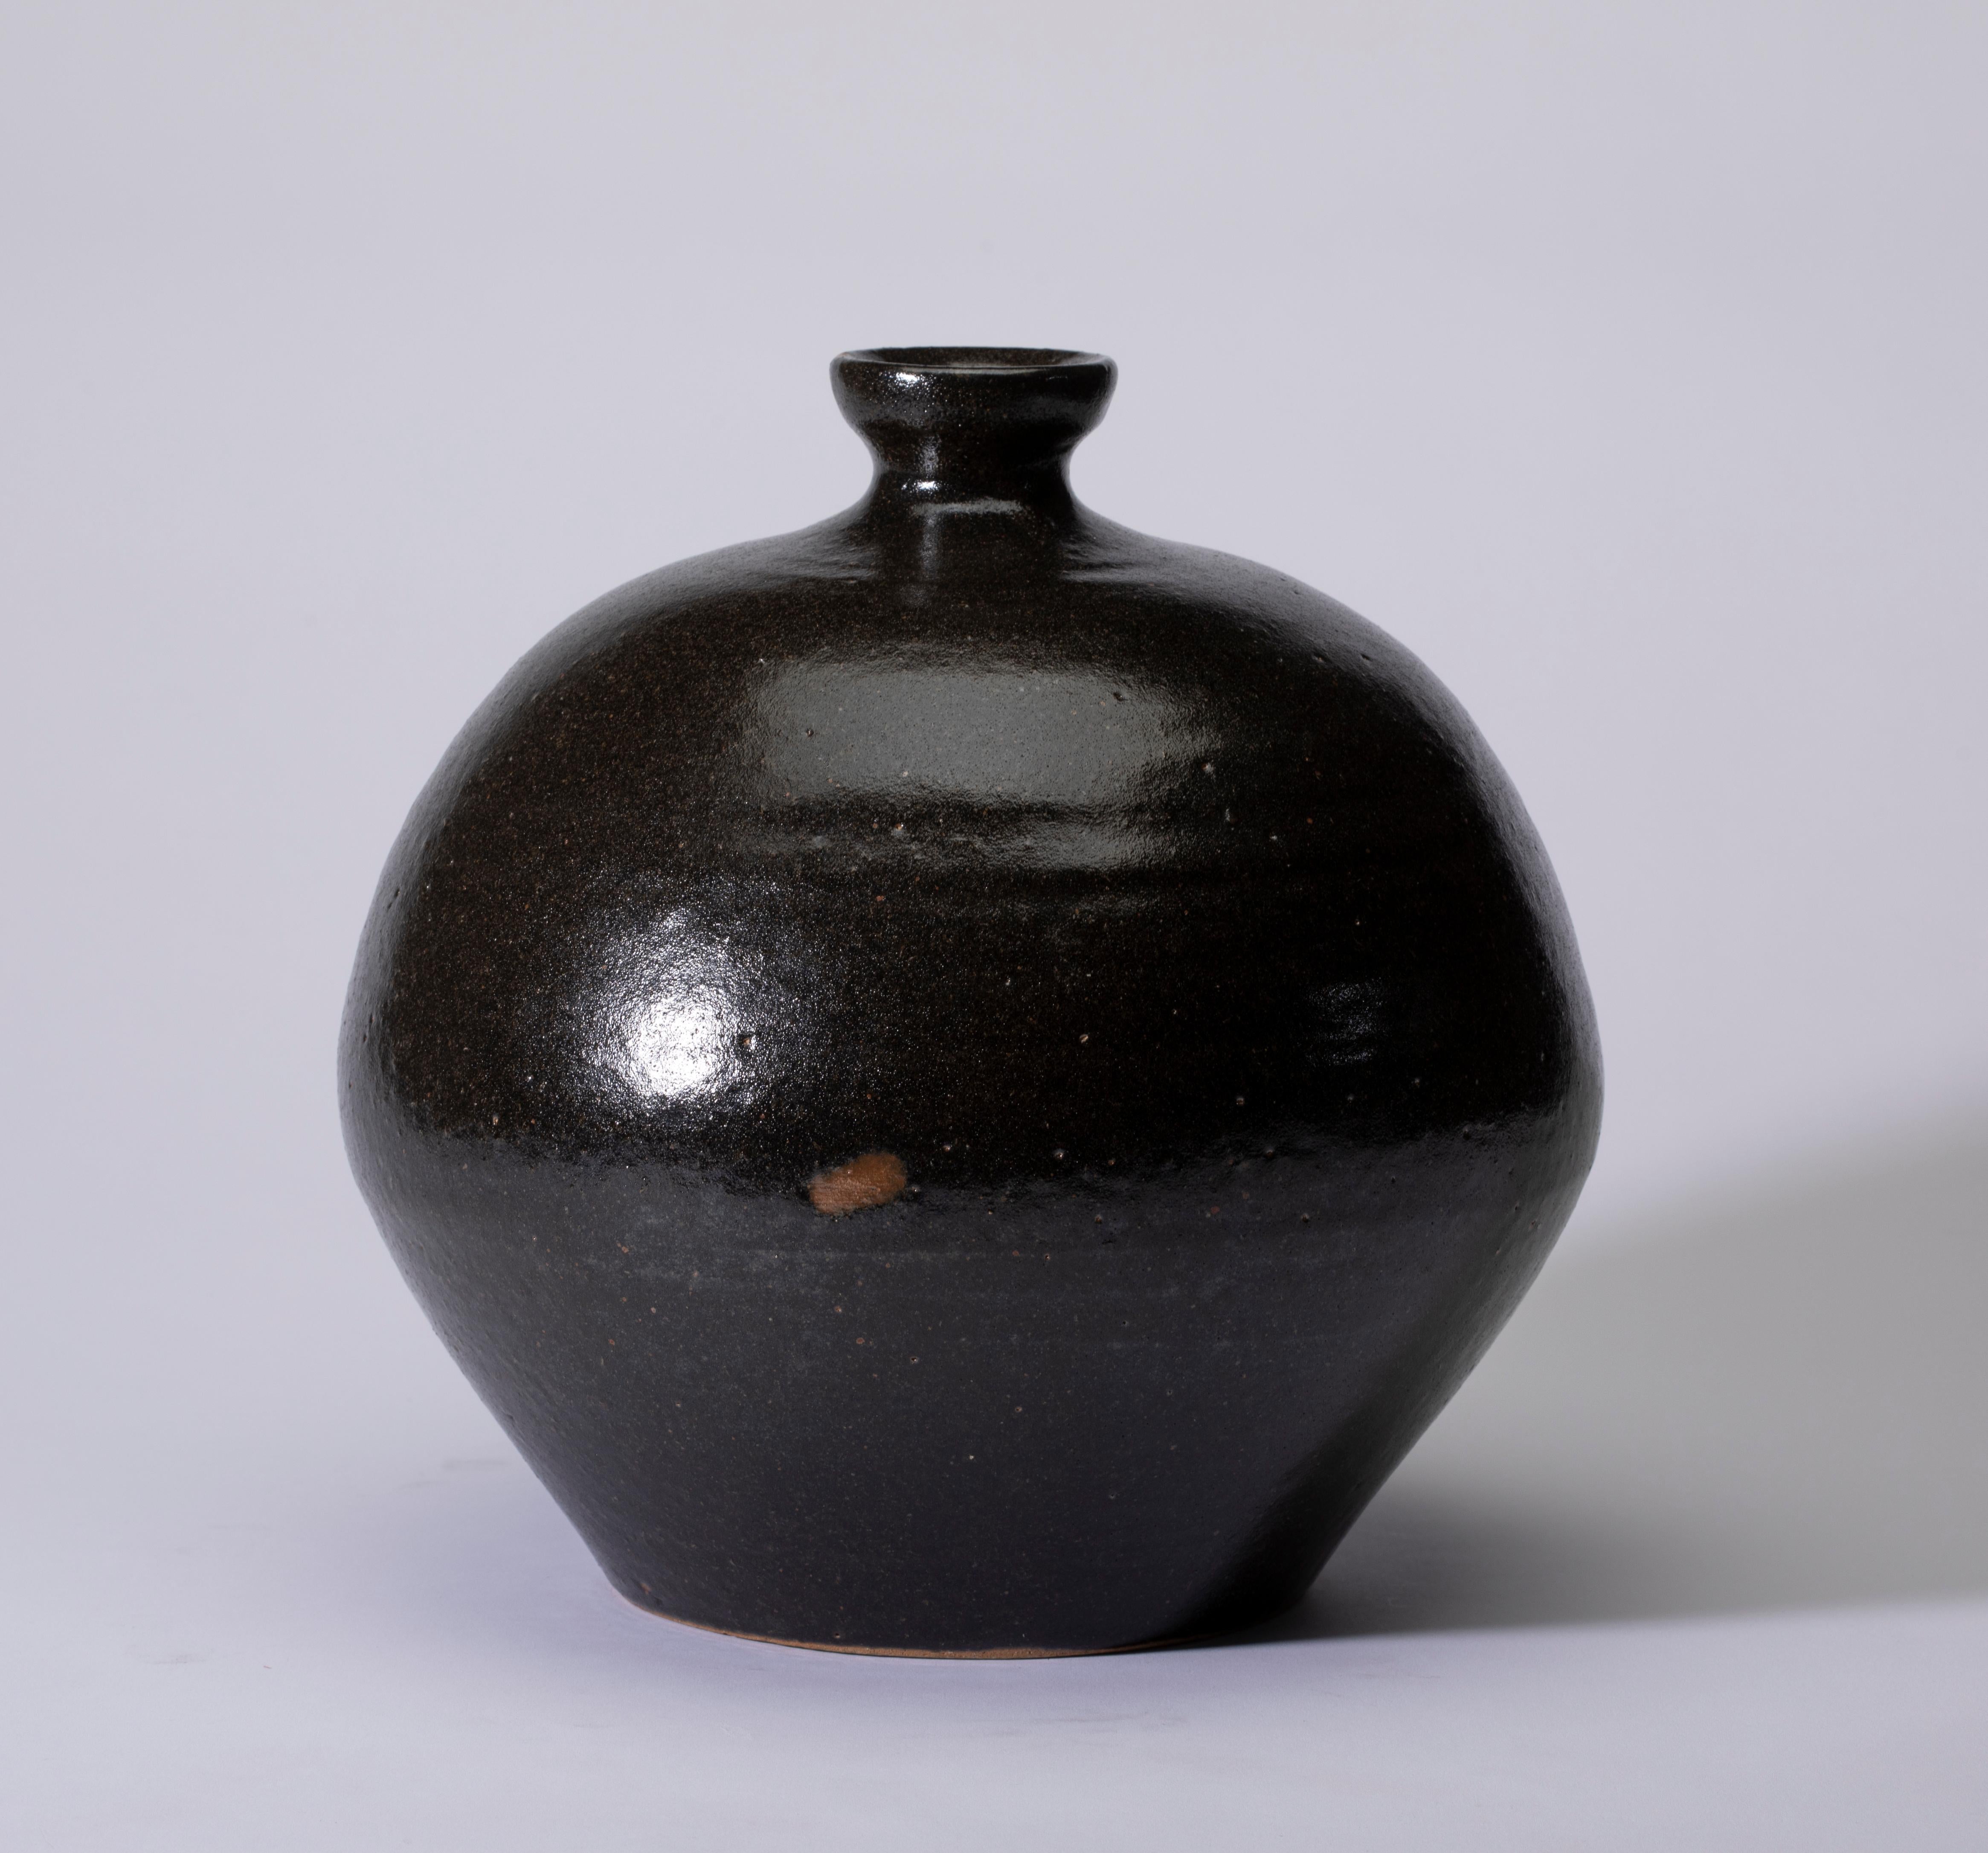 Vase en terre cuite de Mashiko, noir avec des nuances brunes 
Vase en terre cuite de Mashiko à glaçure noire avec nuances brunes
L'argile de la région est une forme pure d'argile riche en acide silicique et en fer qui produit une couleur profonde,